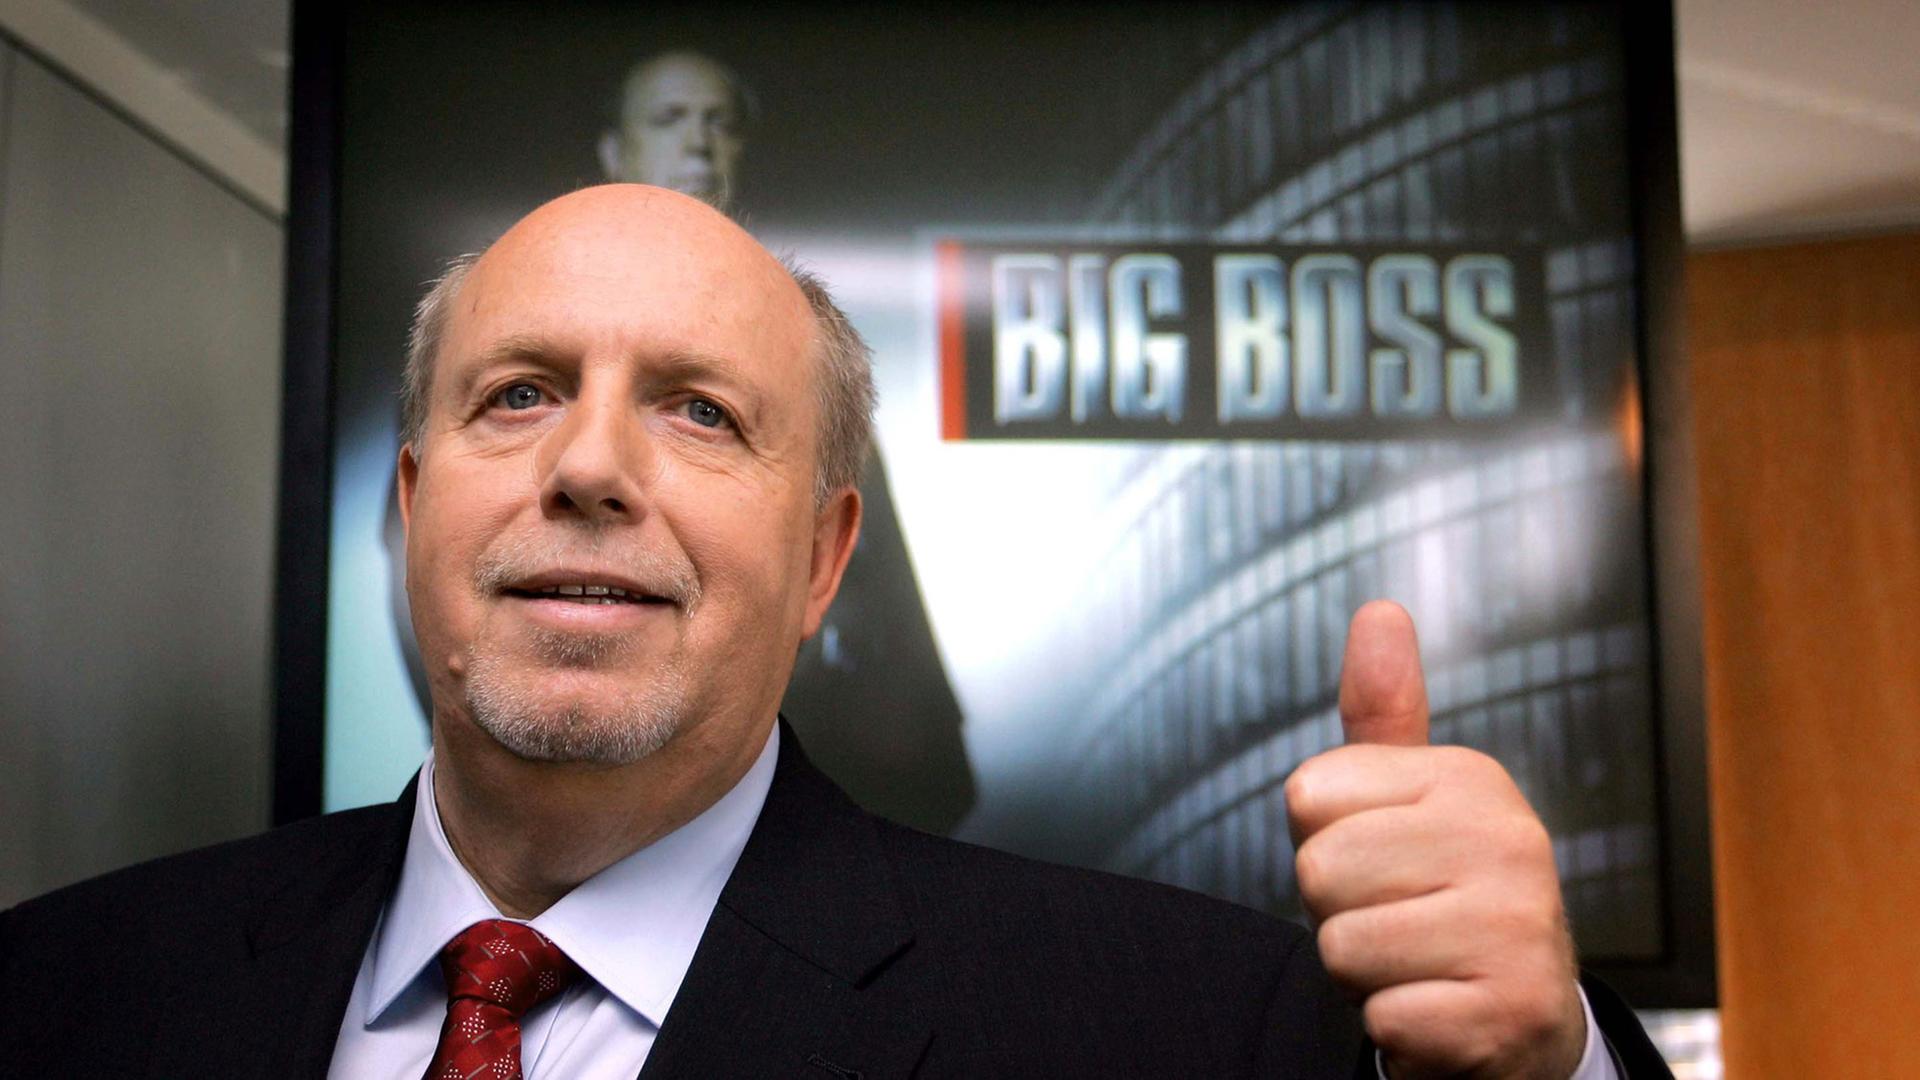 Reiner Calmund als "Big Boss" bei RTL